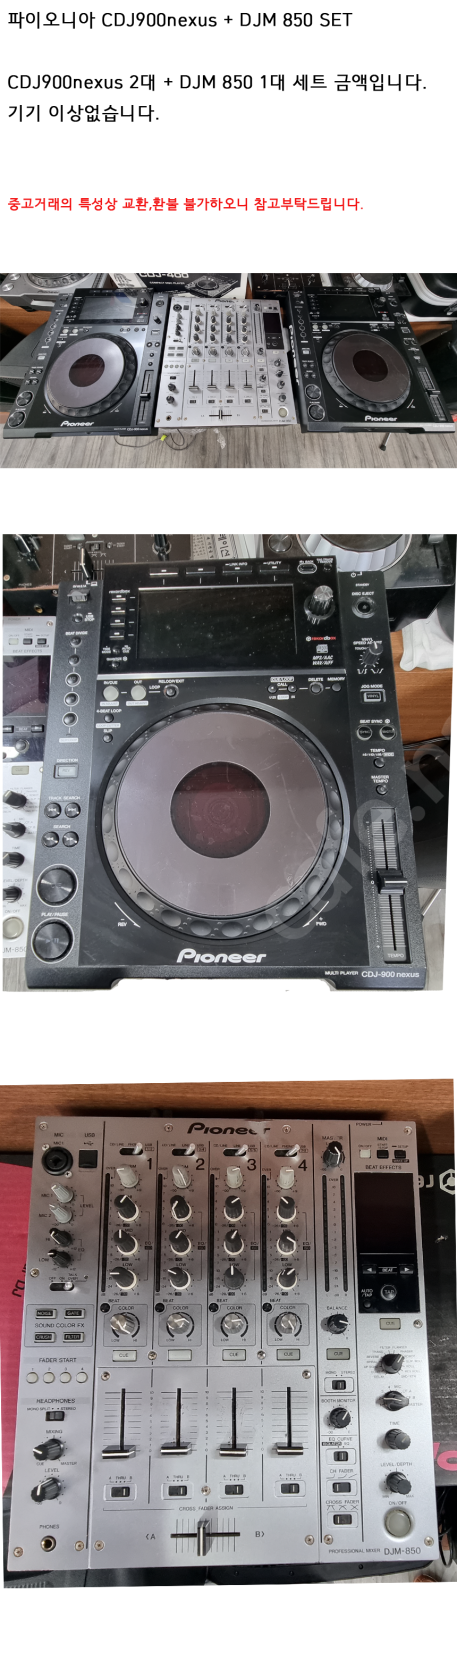 파이오니아 DJ기기 CDJ900nexus + DJM850 SET